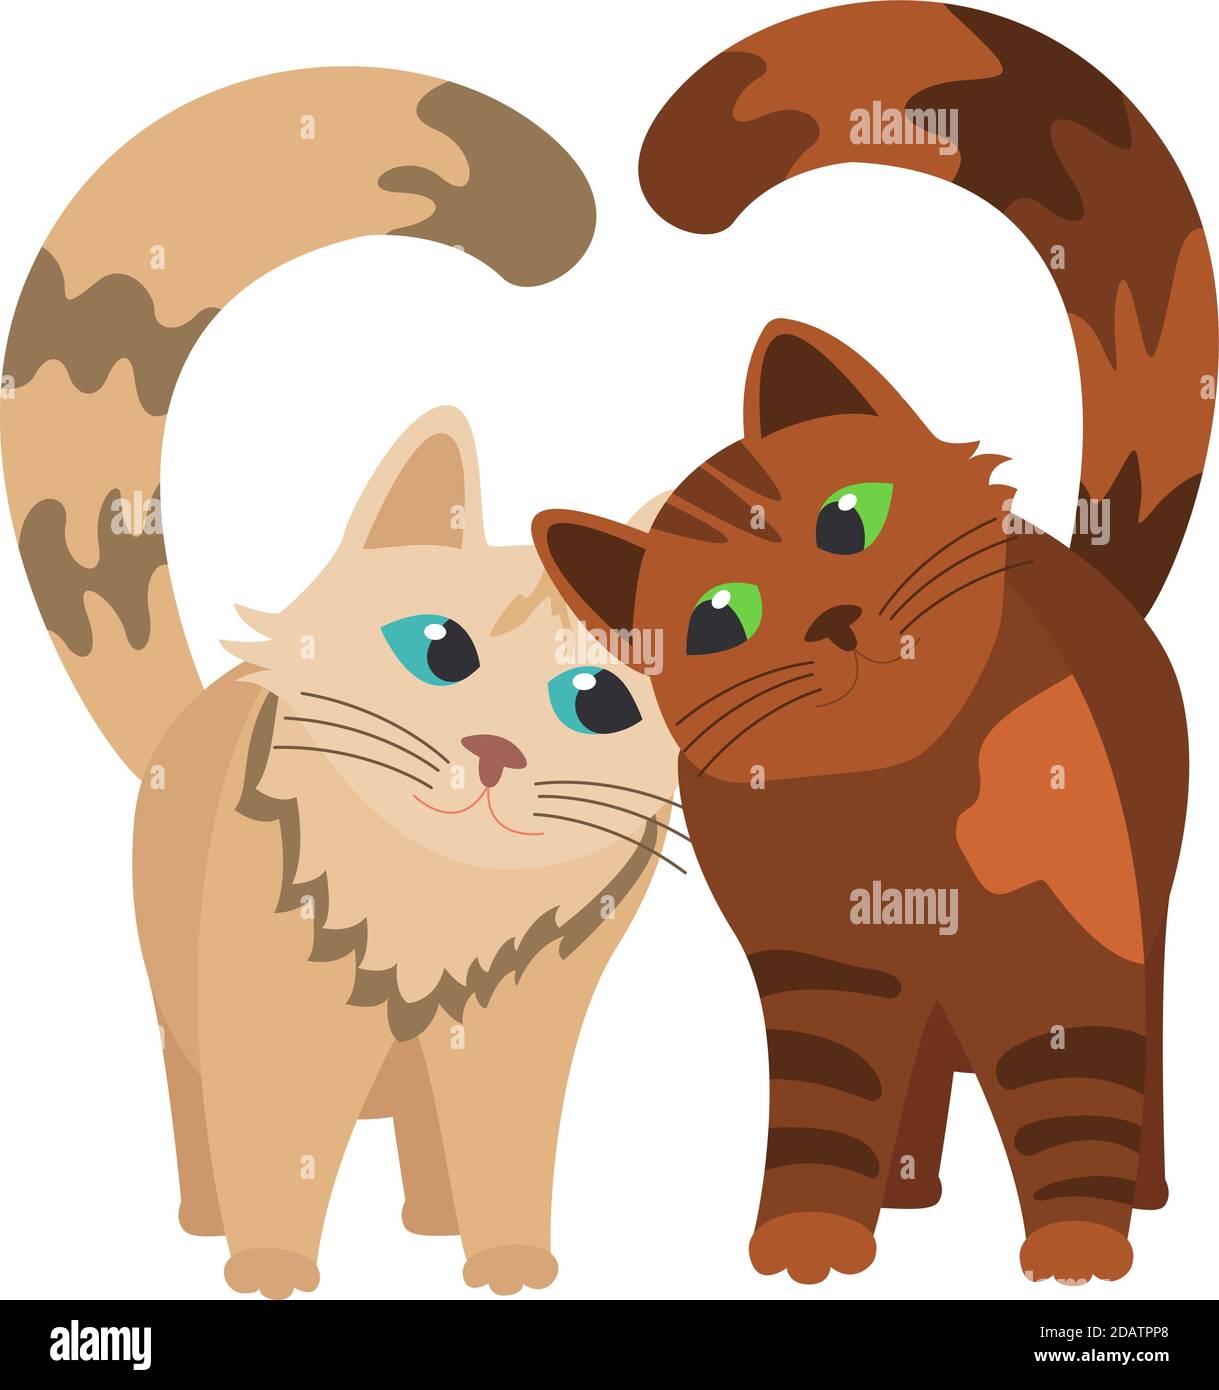 deux chats se frottent les uns contre les autres, des queues comme un coeur. illustration vectorielle plate isolée sur fond blanc Illustration de Vecteur